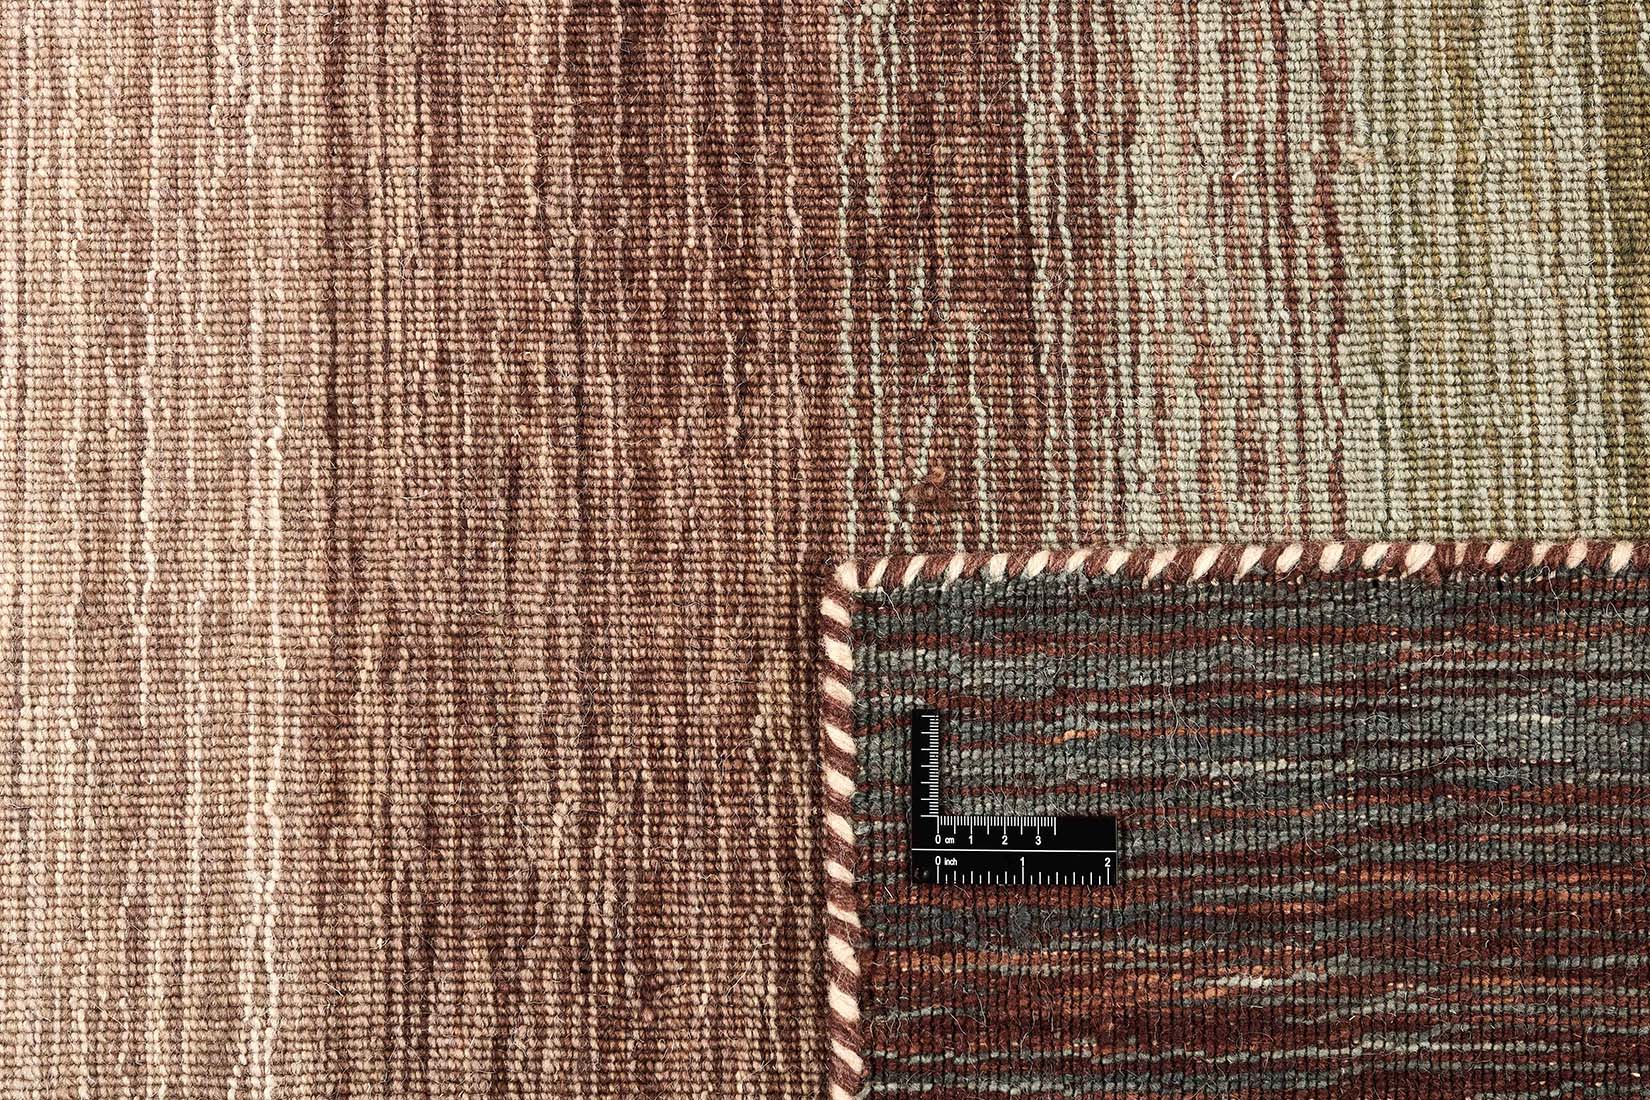  brown and cream ombre flatweave kelim rug
